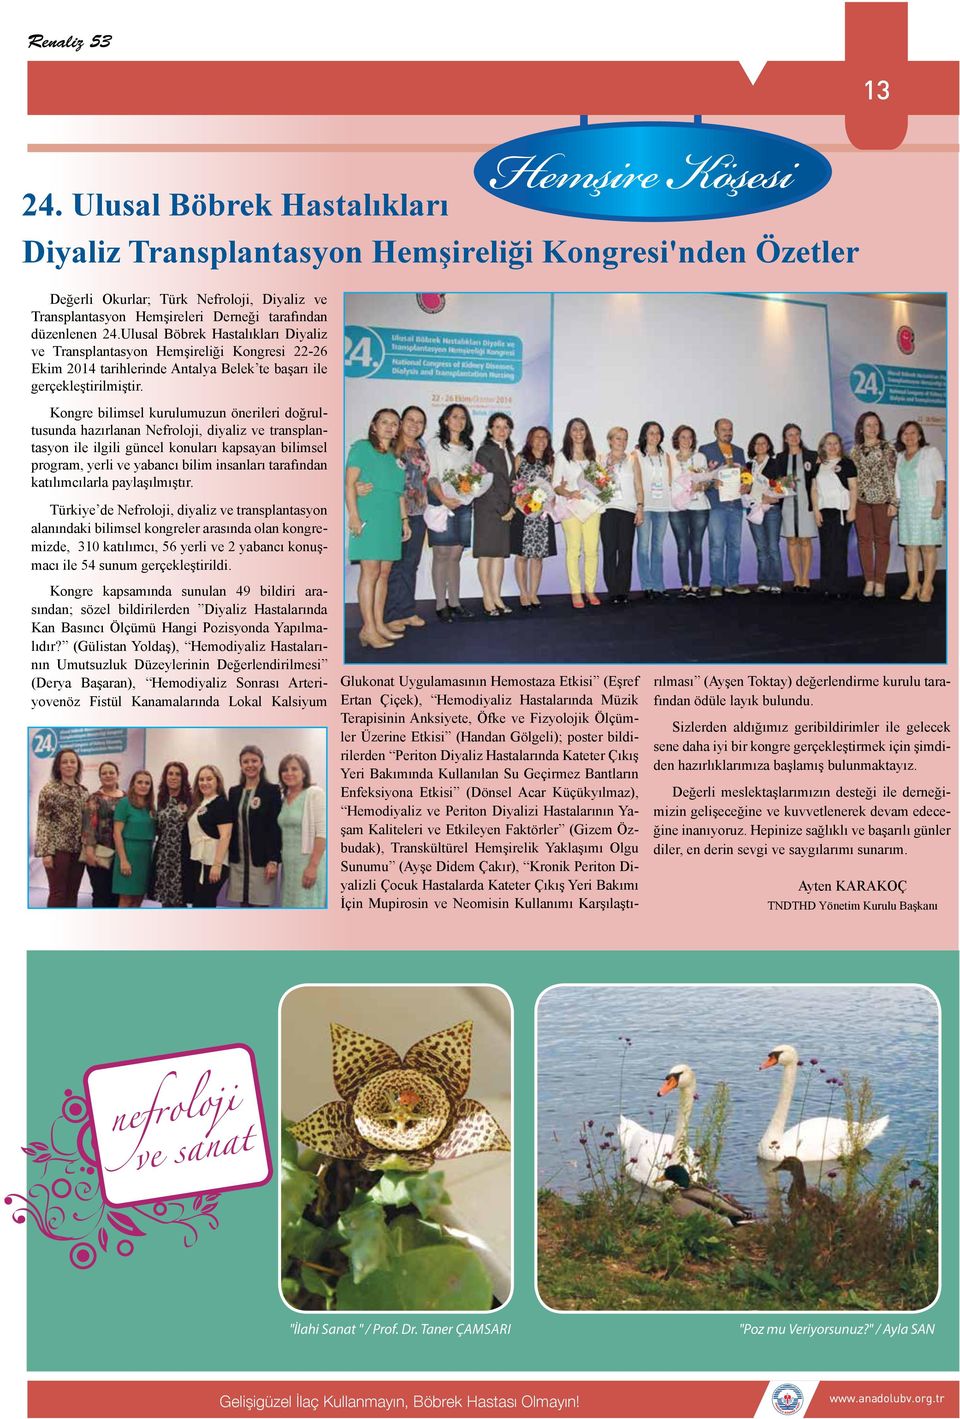 Ulusal Böbrek Hastalıkları Diyaliz ve Transplantasyon Hemşireliği Kongresi 22-26 Ekim 2014 tarihlerinde Antalya Belek te başarı ile gerçekleştirilmiştir.